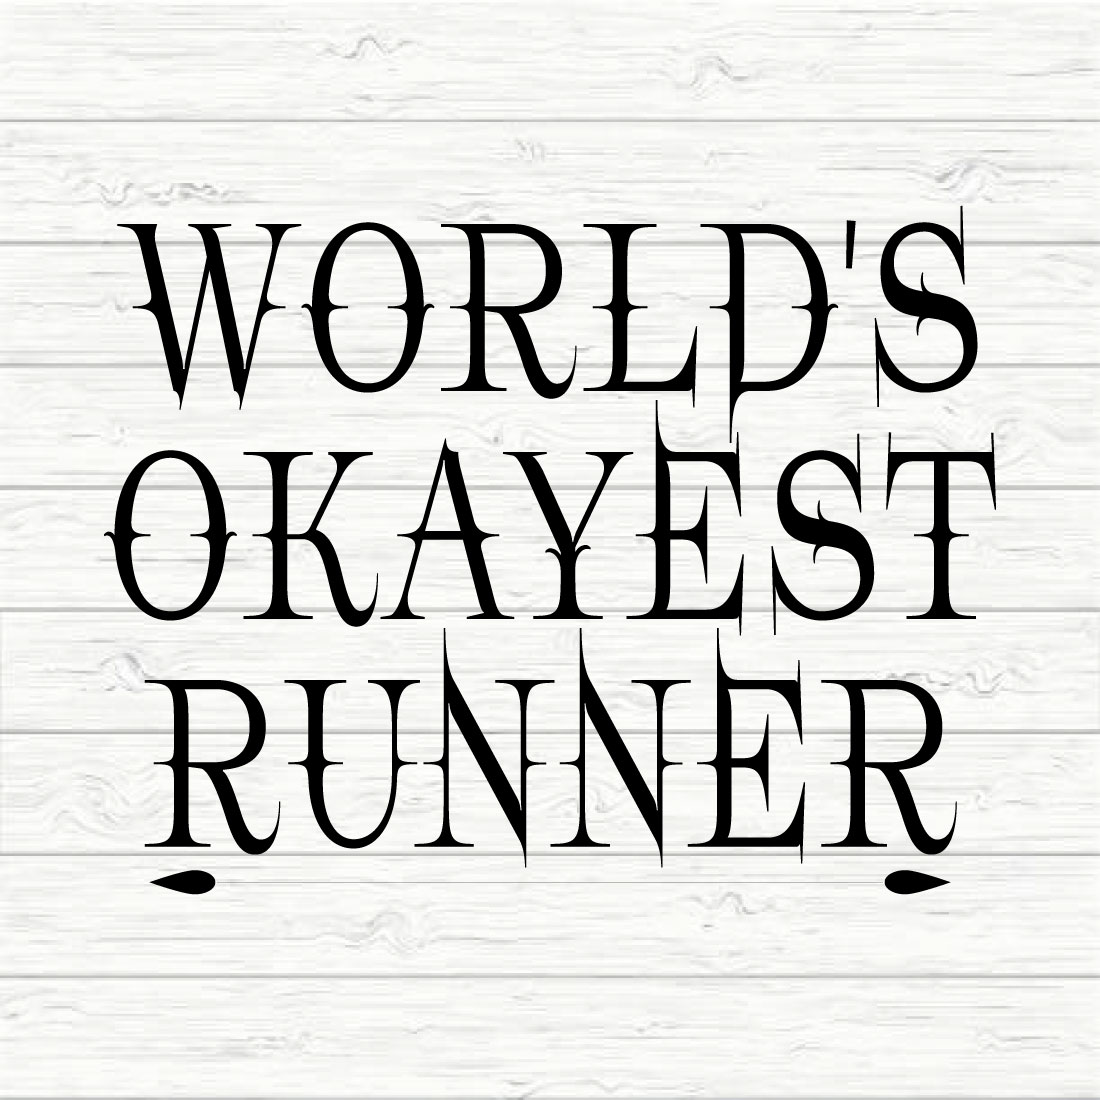 World's Okayest Runner cover image.